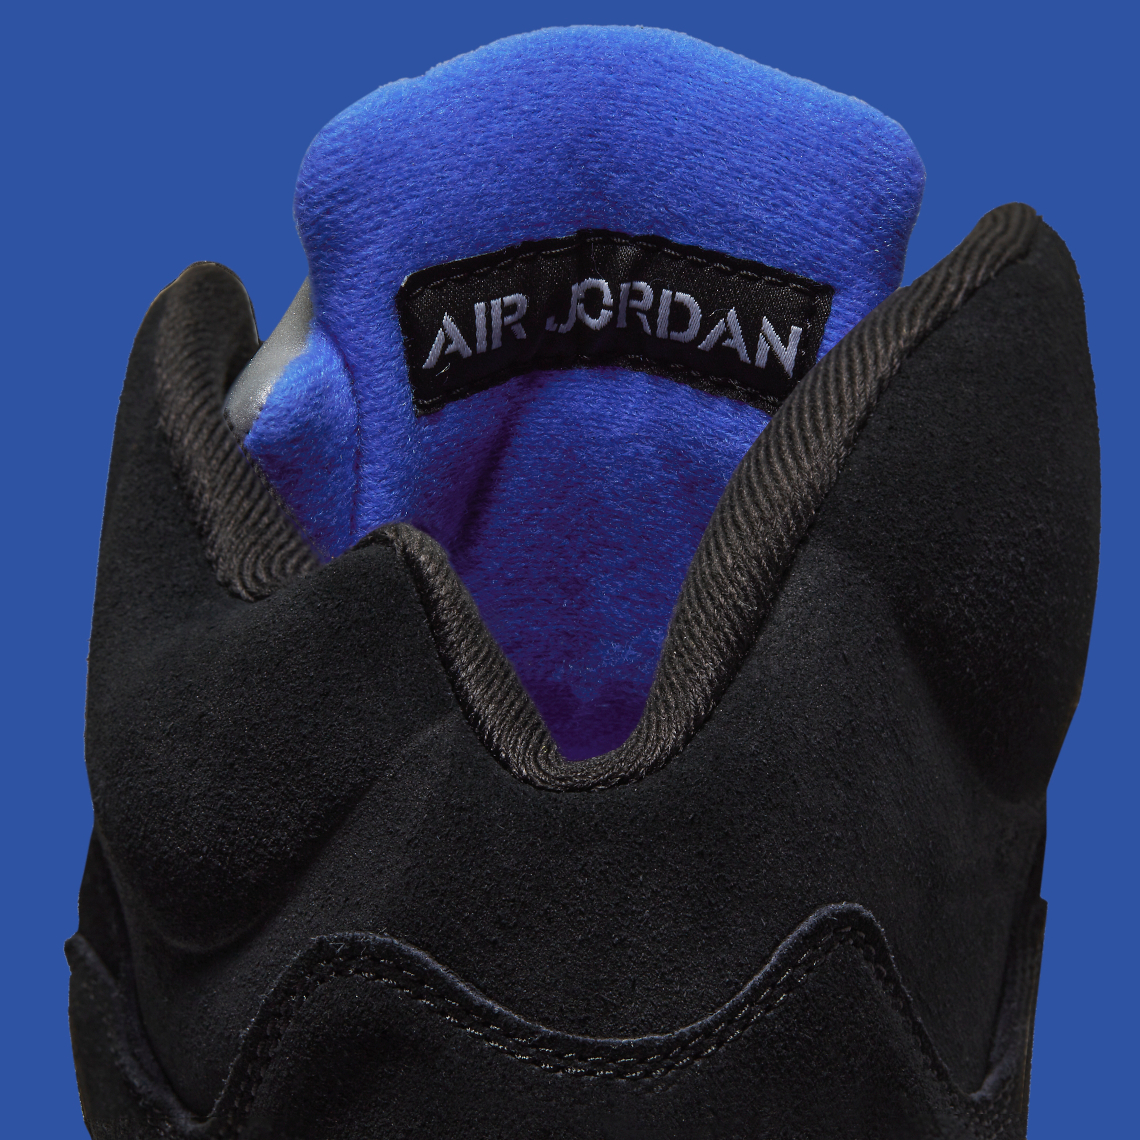 Air Jordan 5 Racer Blue Ct4838 004 4 1